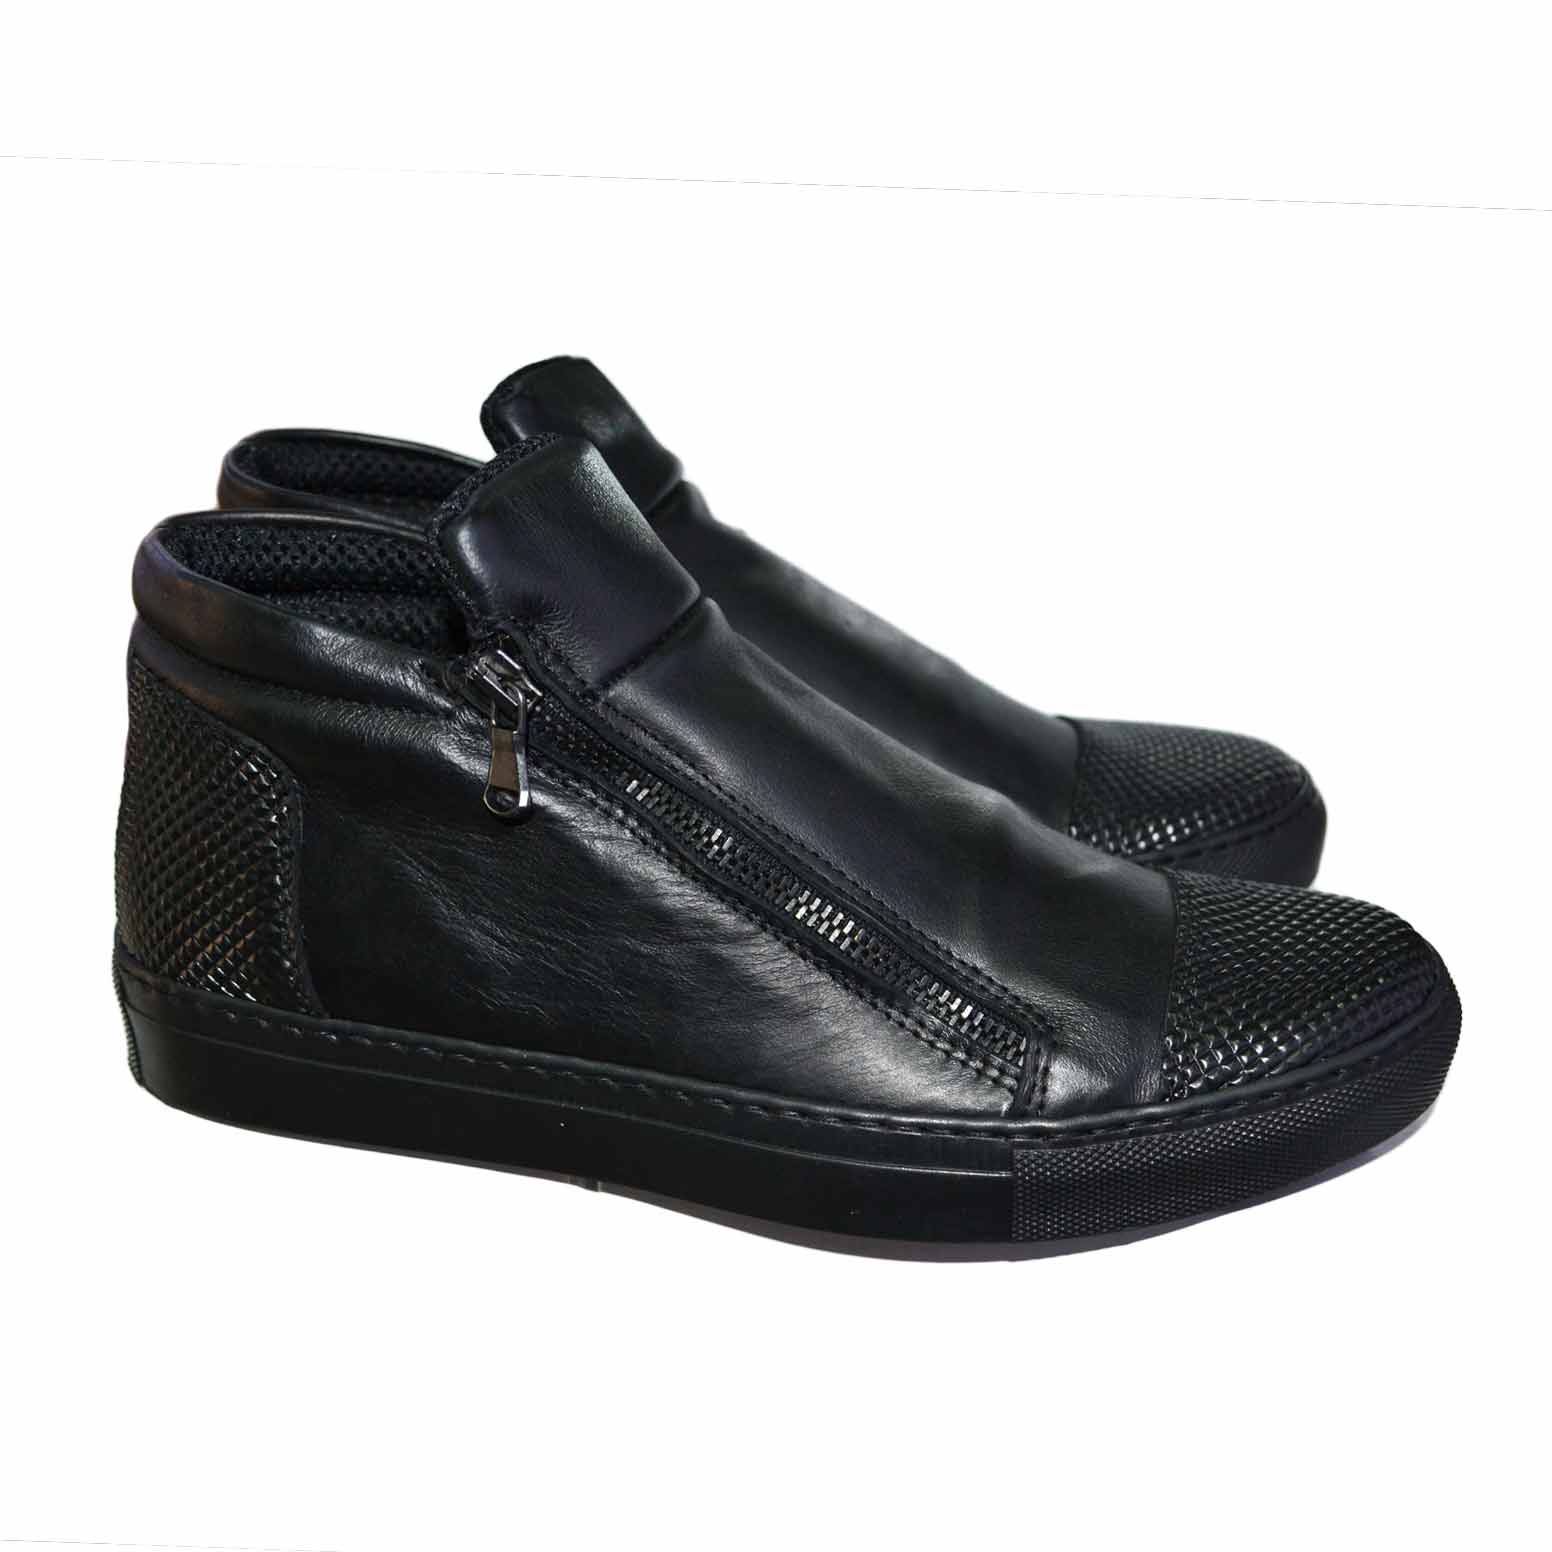 Sneakers bassa uomo scarpe calzature  modello con zip dettaglio nero piramide vera pelle.